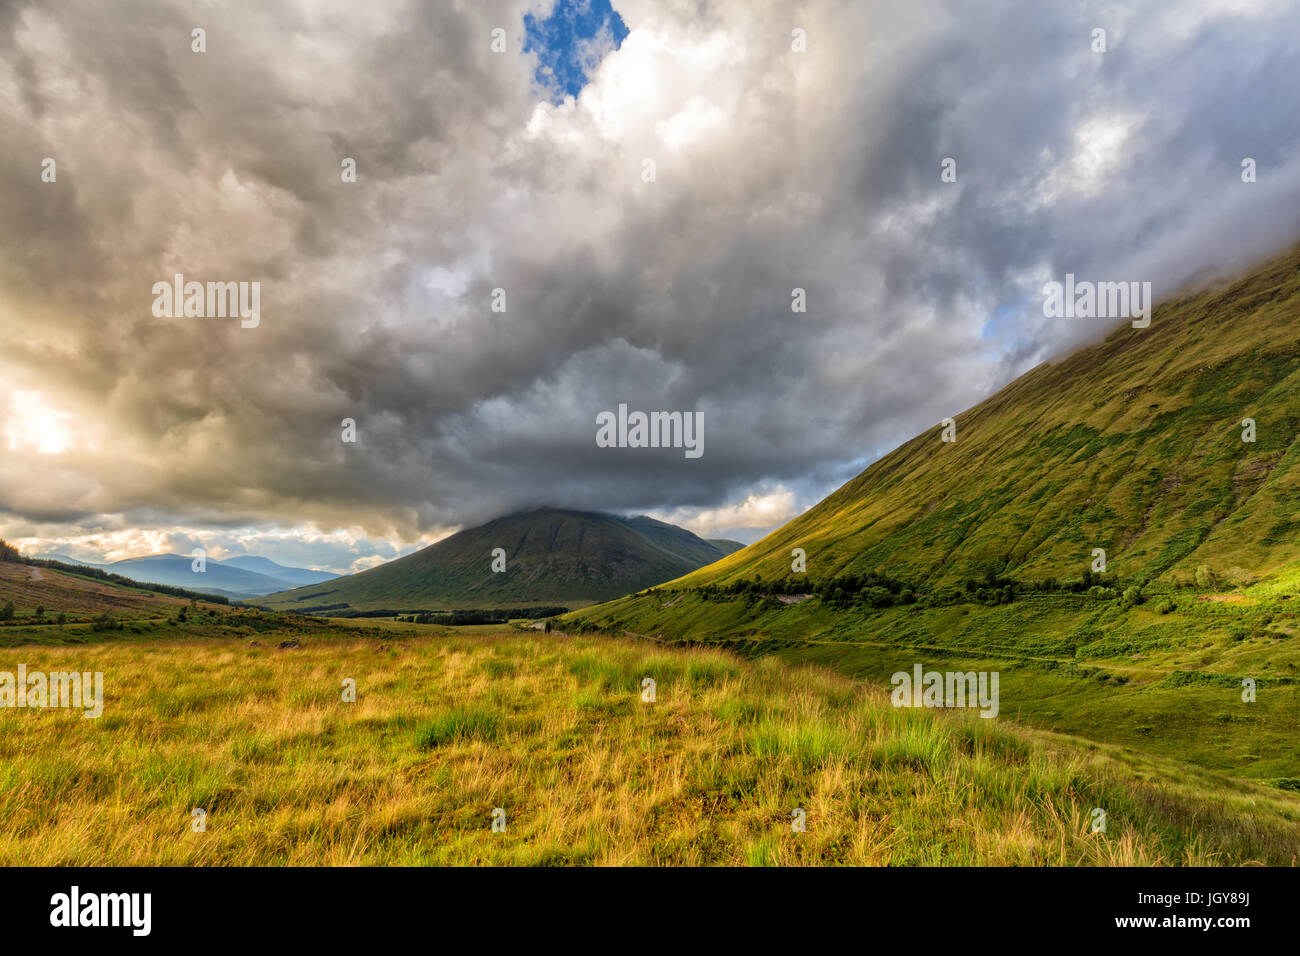 Verdent erba in una valle con Beinn Dorain e Beinn Odhar montagne sullo sfondo. Foto Stock